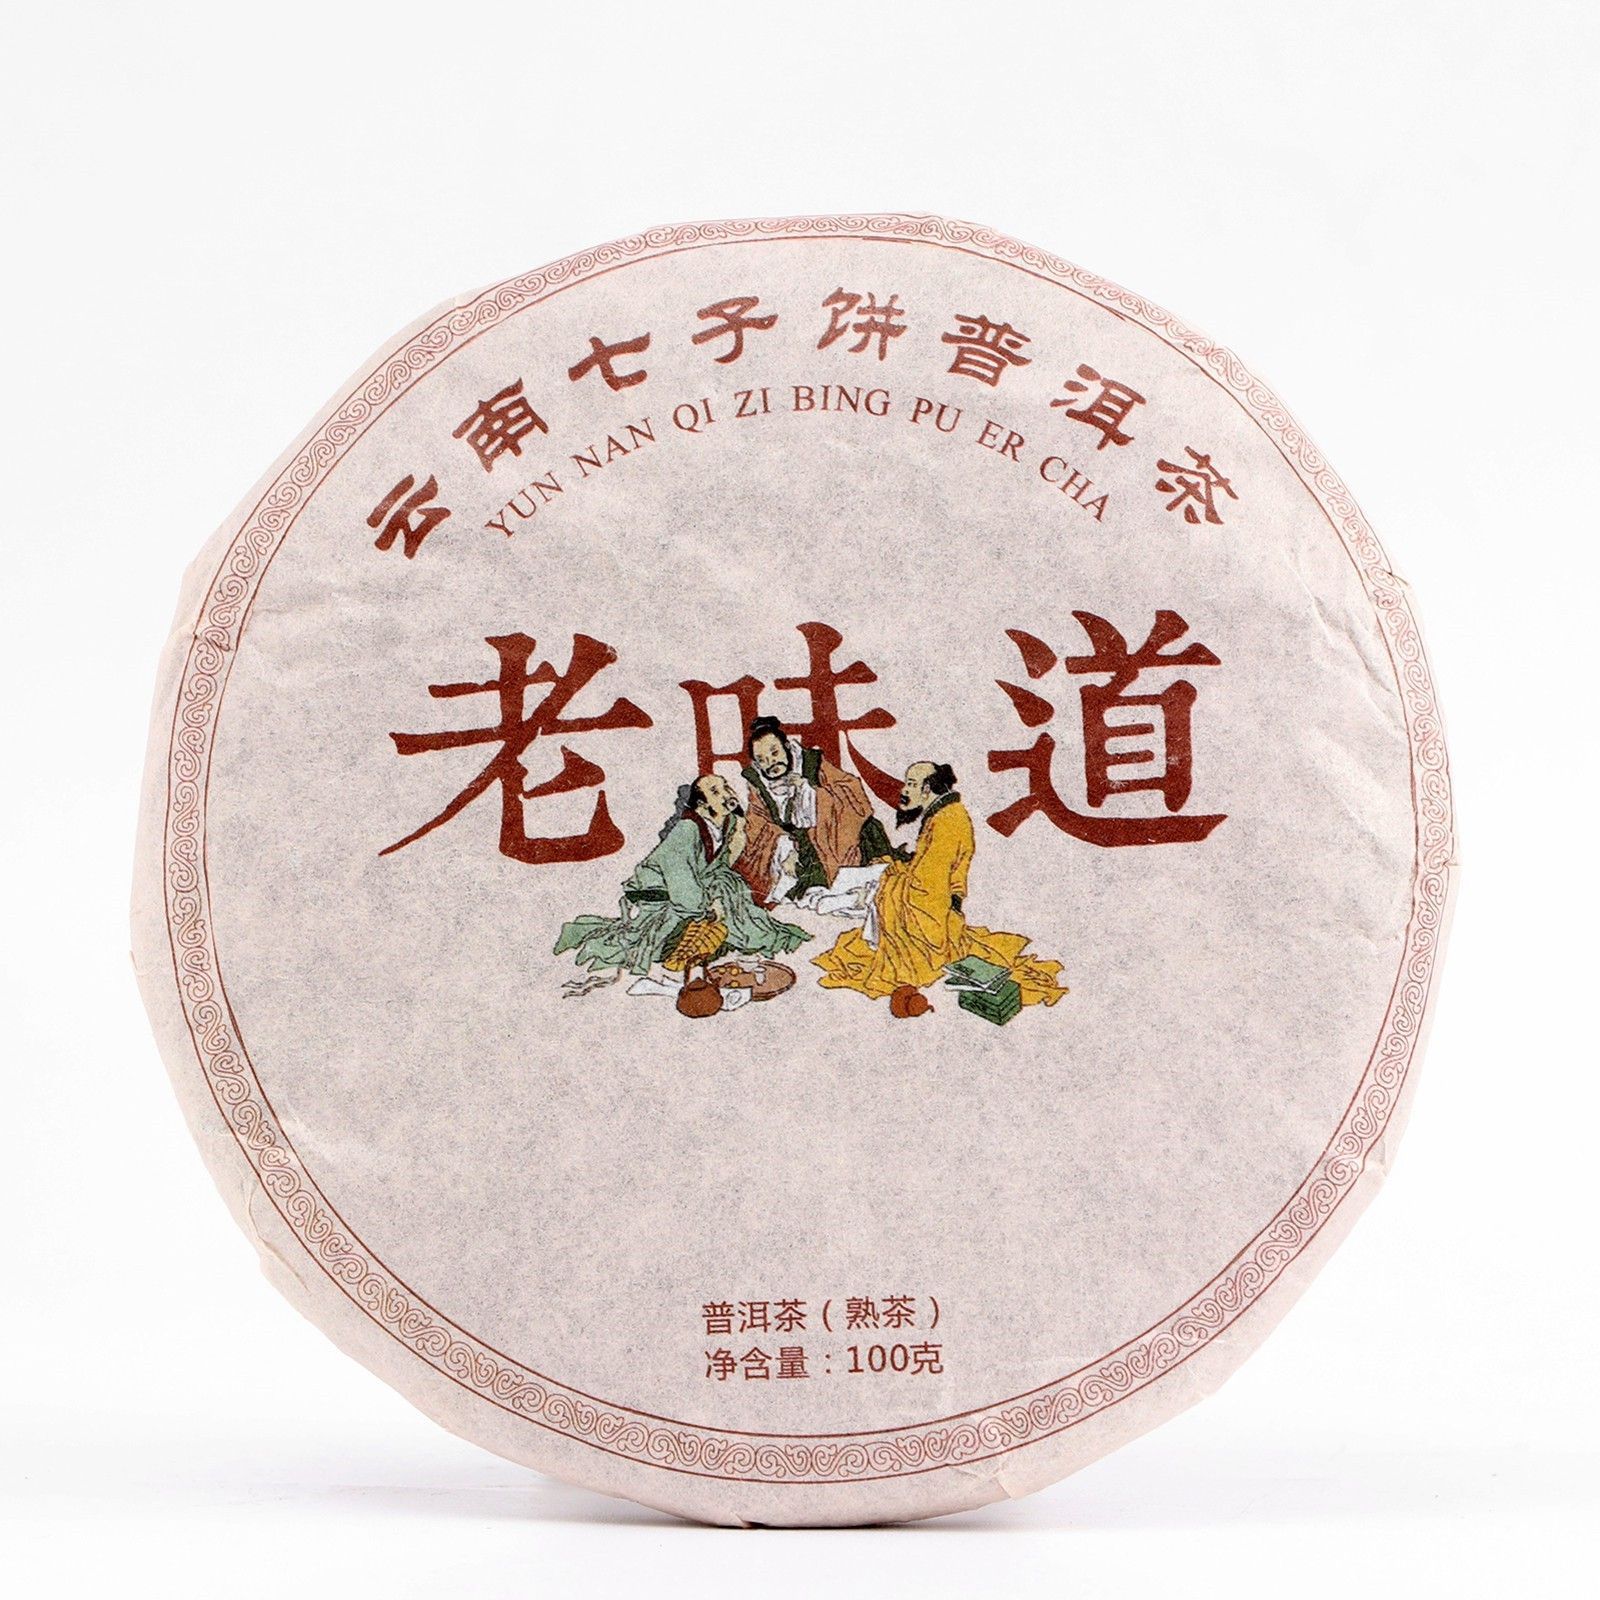 Китайский выдержанный чай "Шу пуэр. Fenghuang", 100 г, 2020 г, Юннань. Шу пуэр Лао. Пуэр Lao Yao. Китайский пикап пуэр.